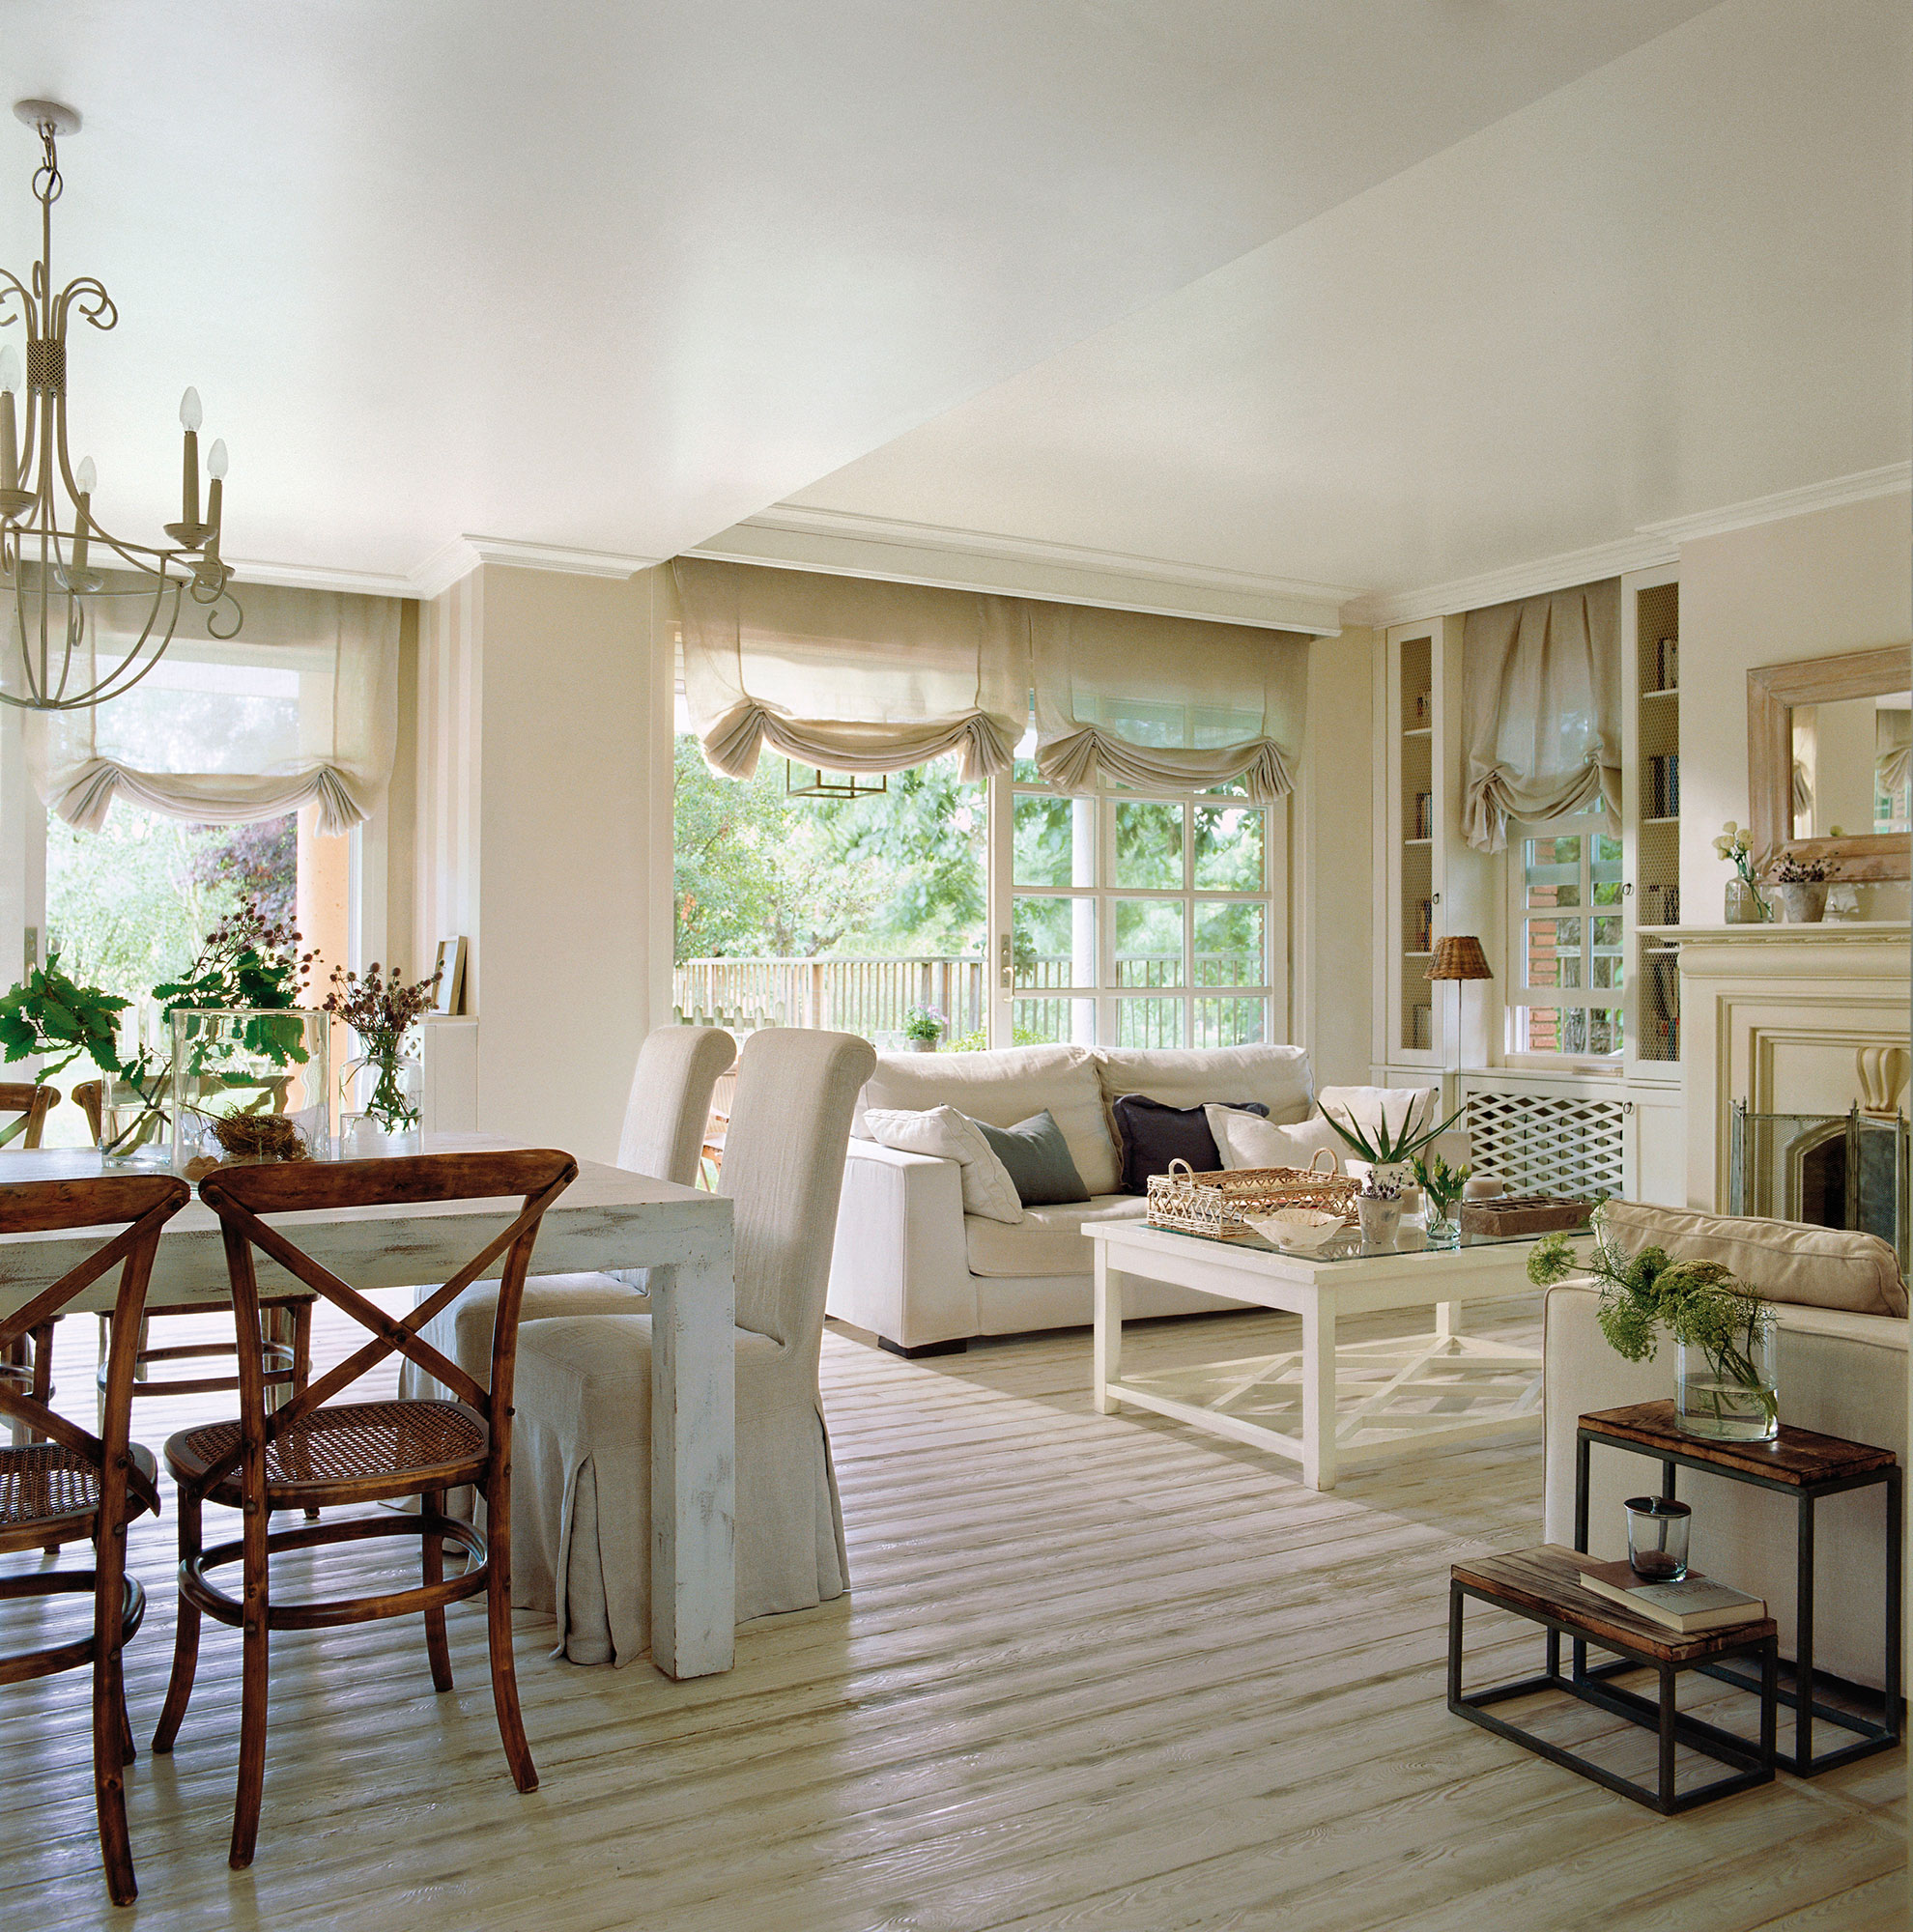 Salón comedor clásico con sofás y muebles de color blanco y chimenea.